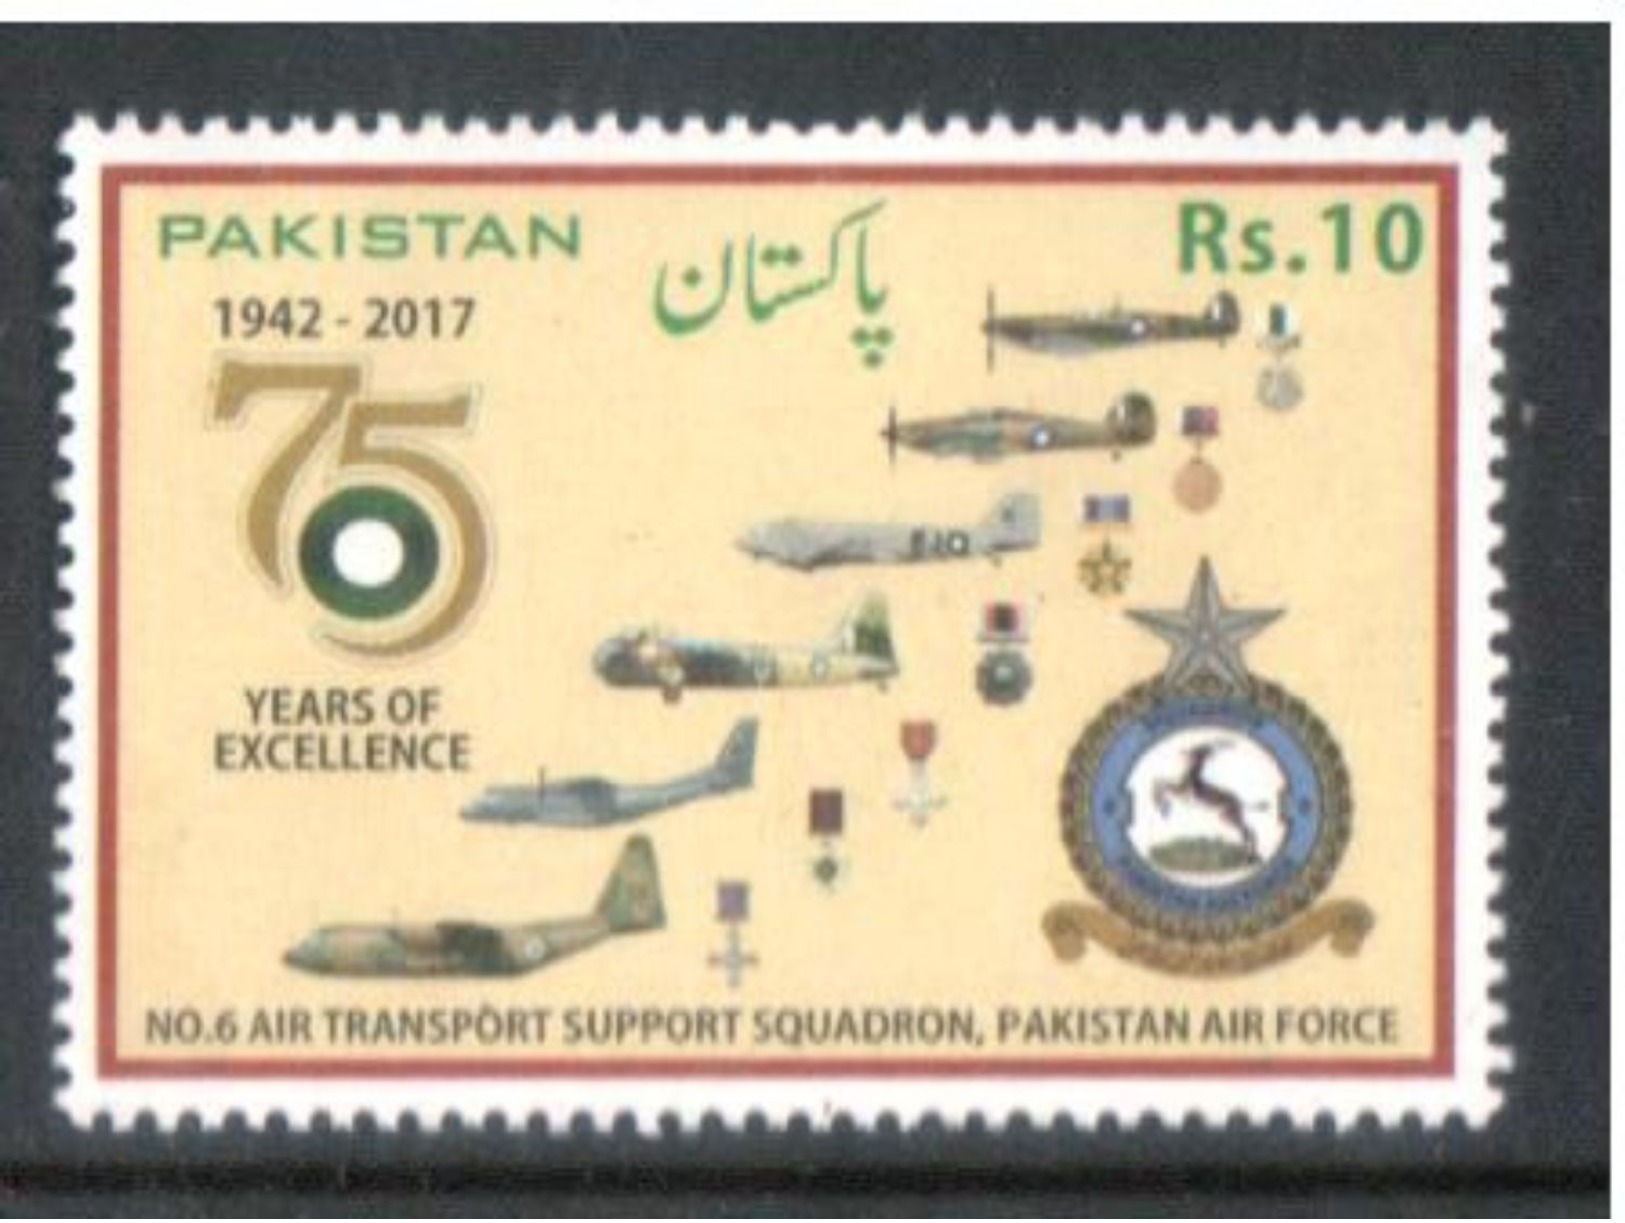 Pakistan 2017 Pak Air Force Rs. 10 MNH - Pakistan